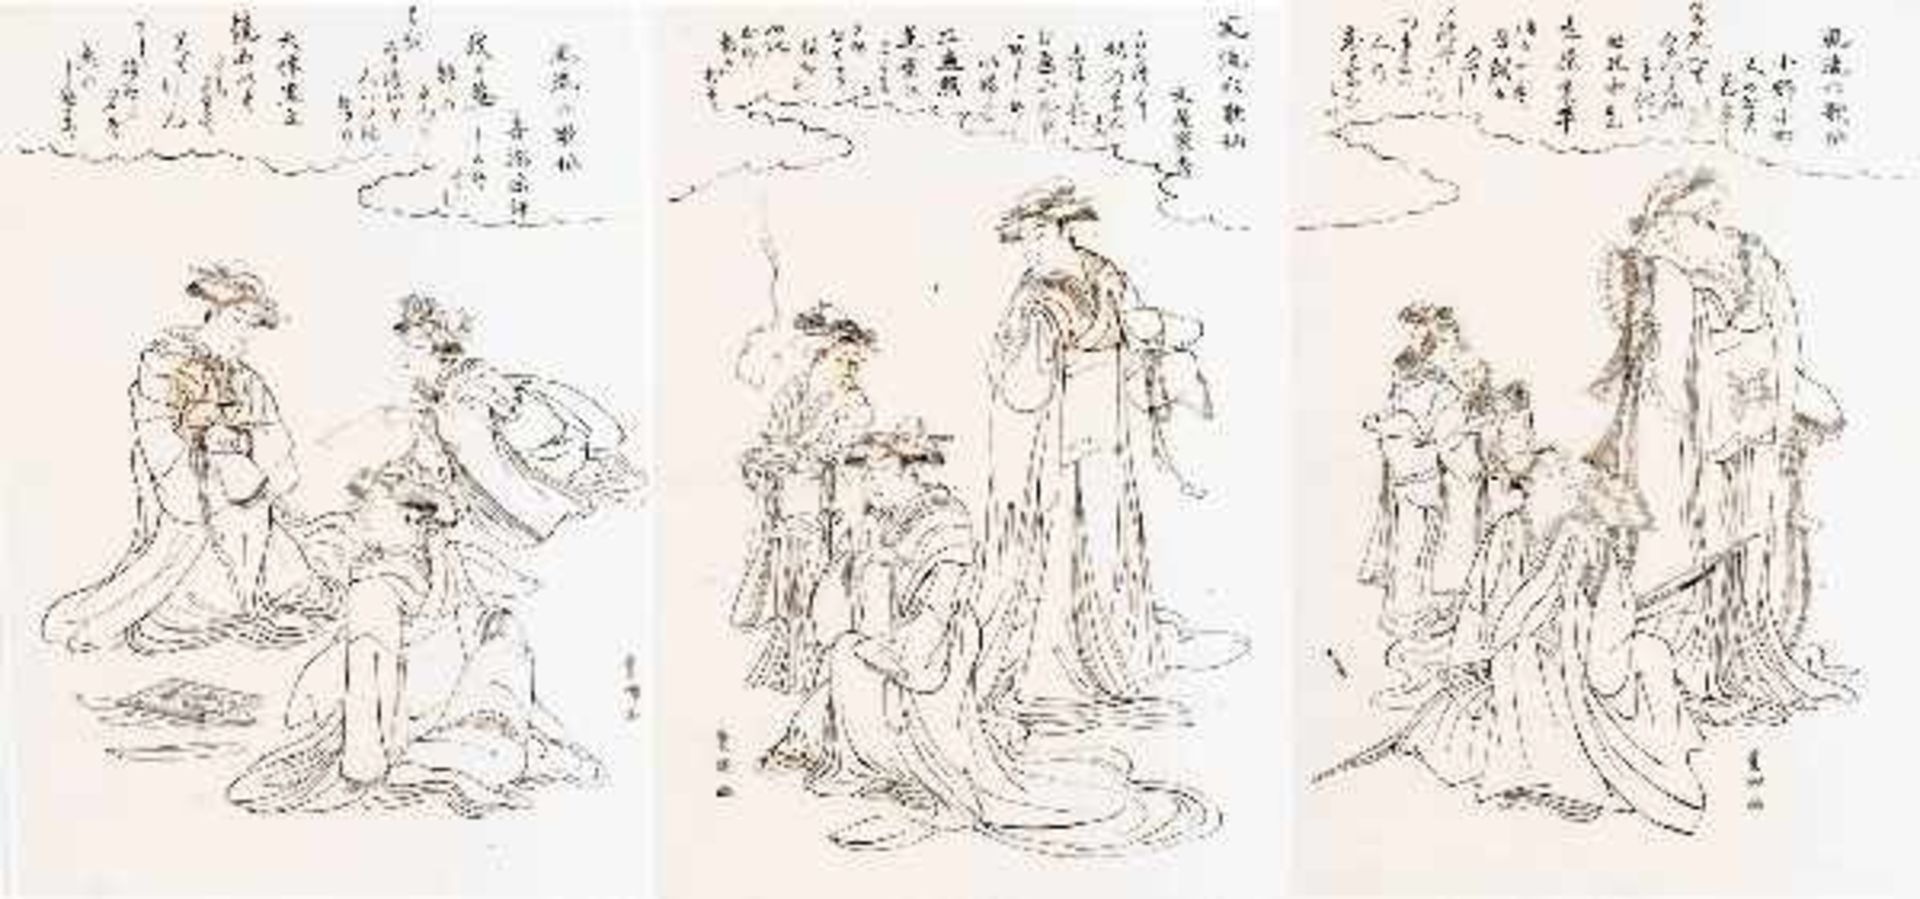 UTAGAWA TOYOKUNI I 歌川豊国 (1769 - 1825) Hanshita-e. Ink on Minogami-Paper. Japan, ca. 1789Hanshita-